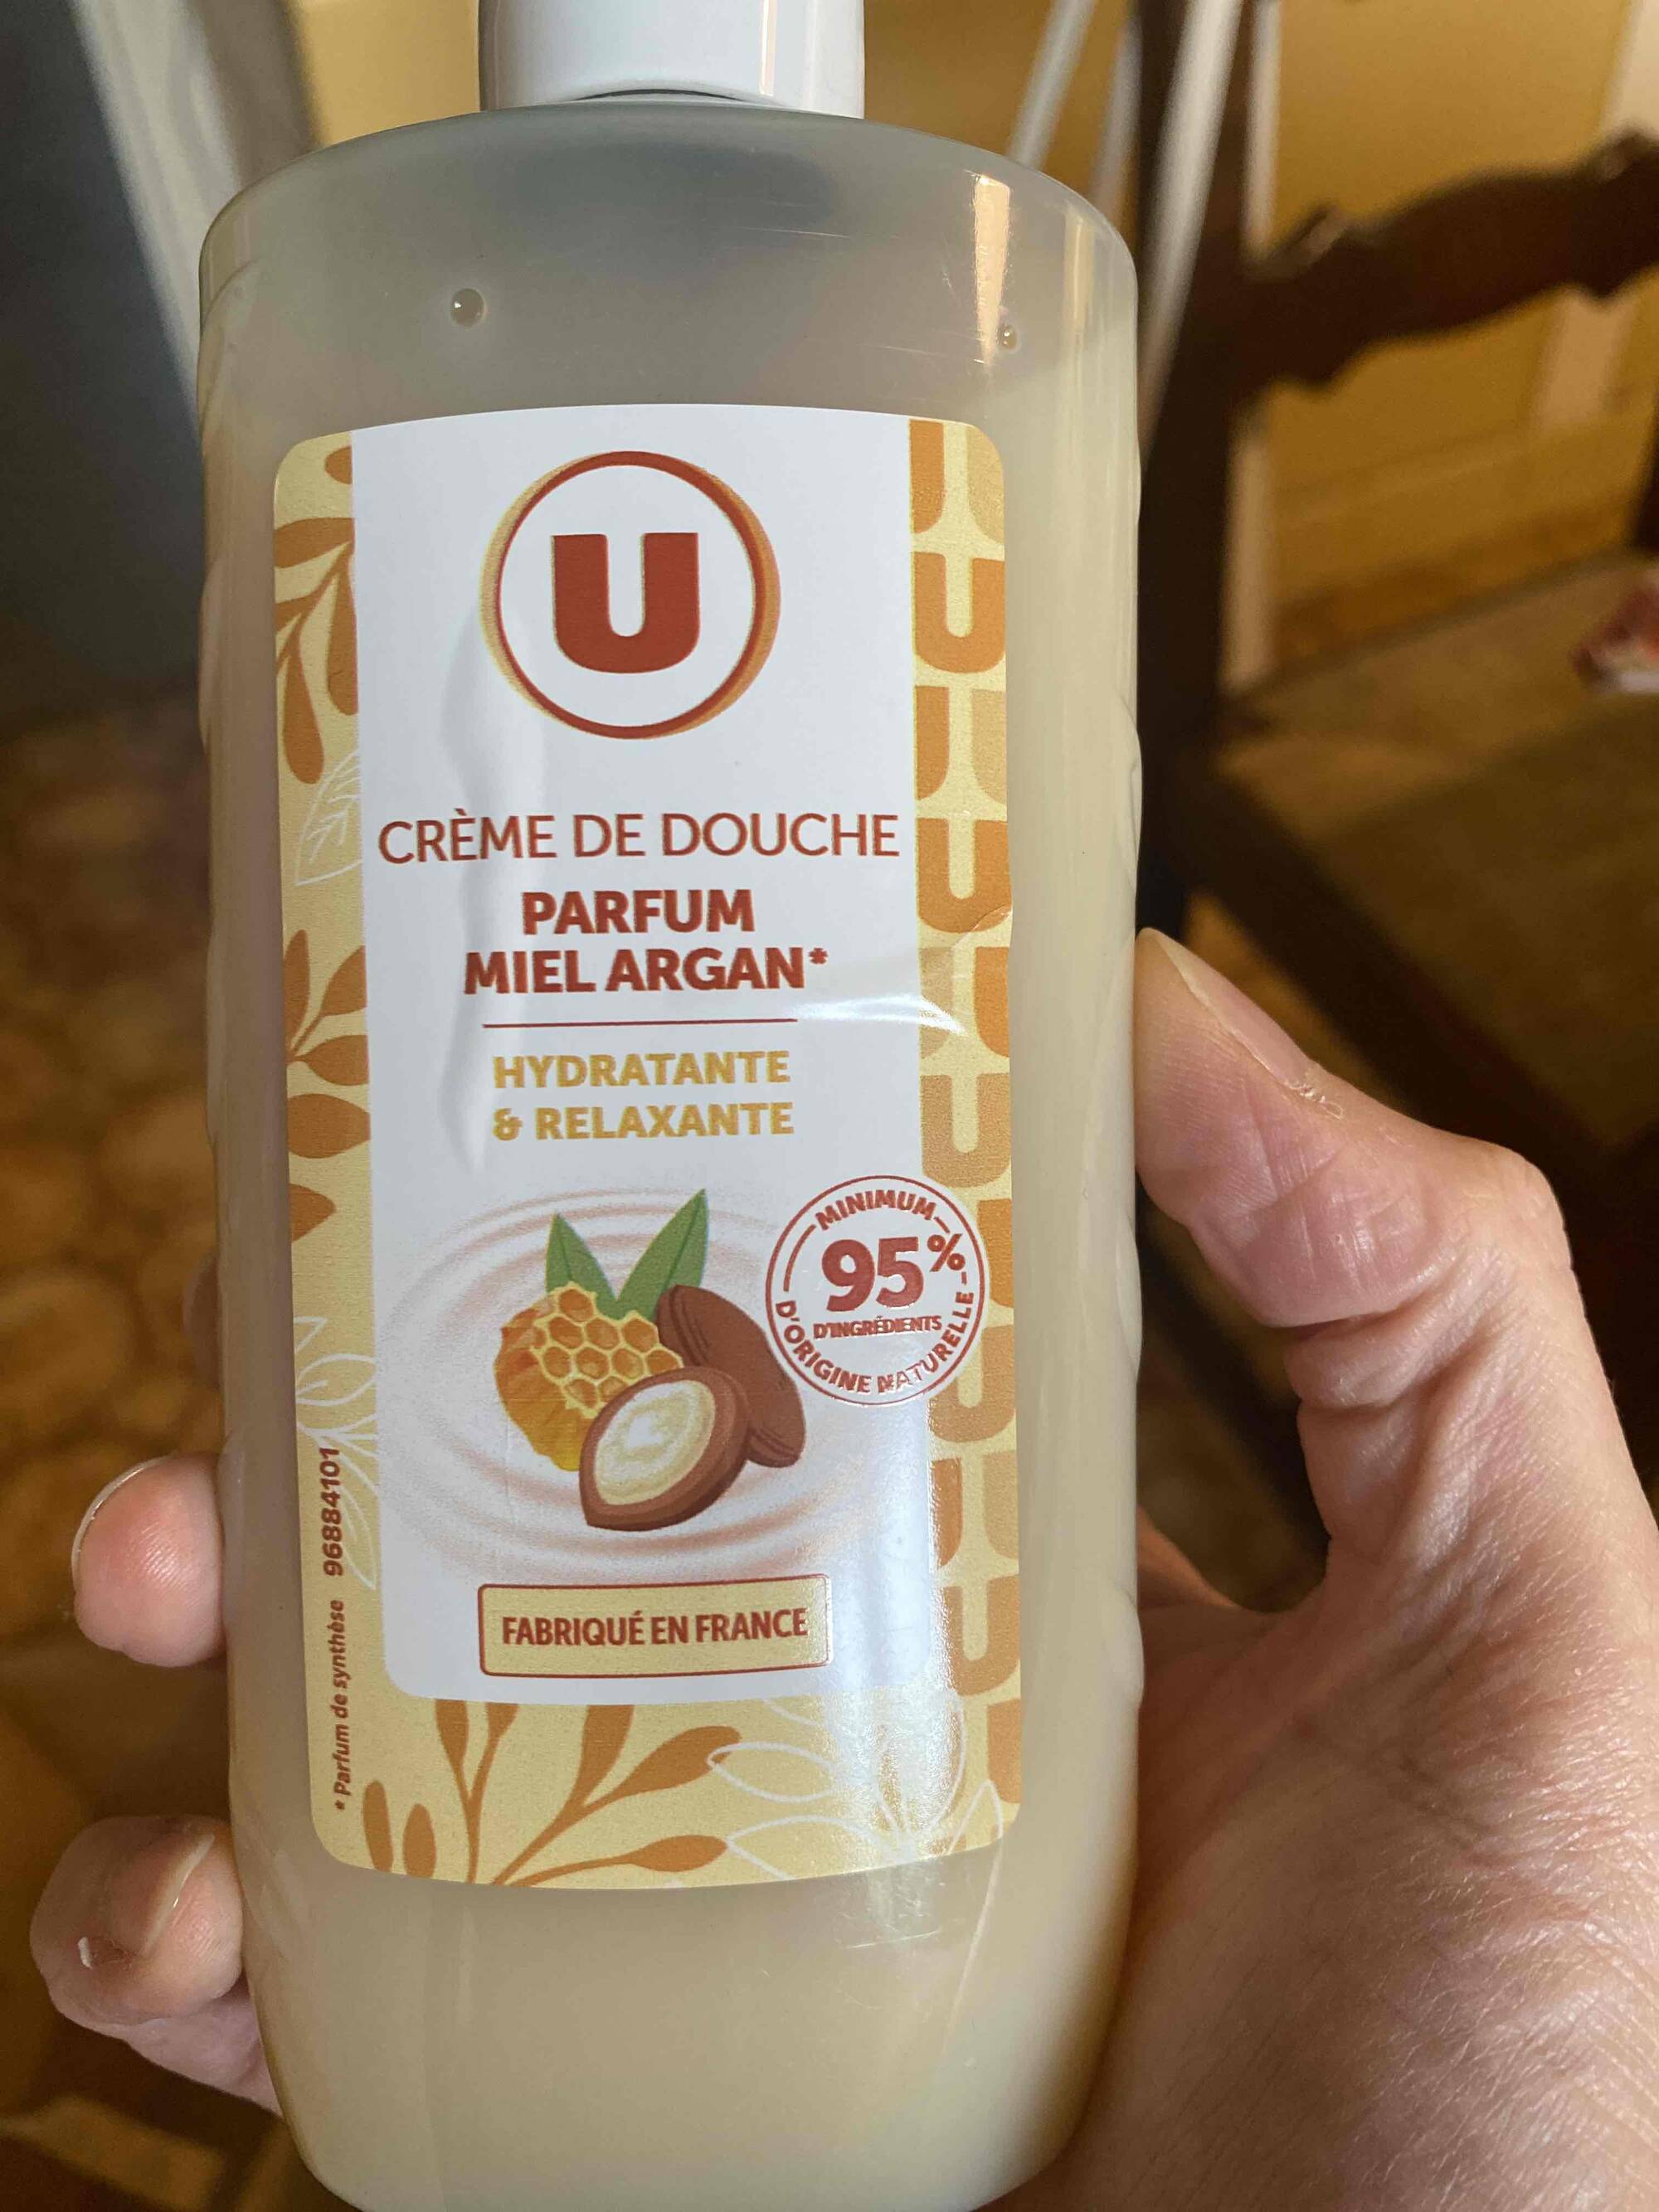 U - Crème de douche parfum miel argan